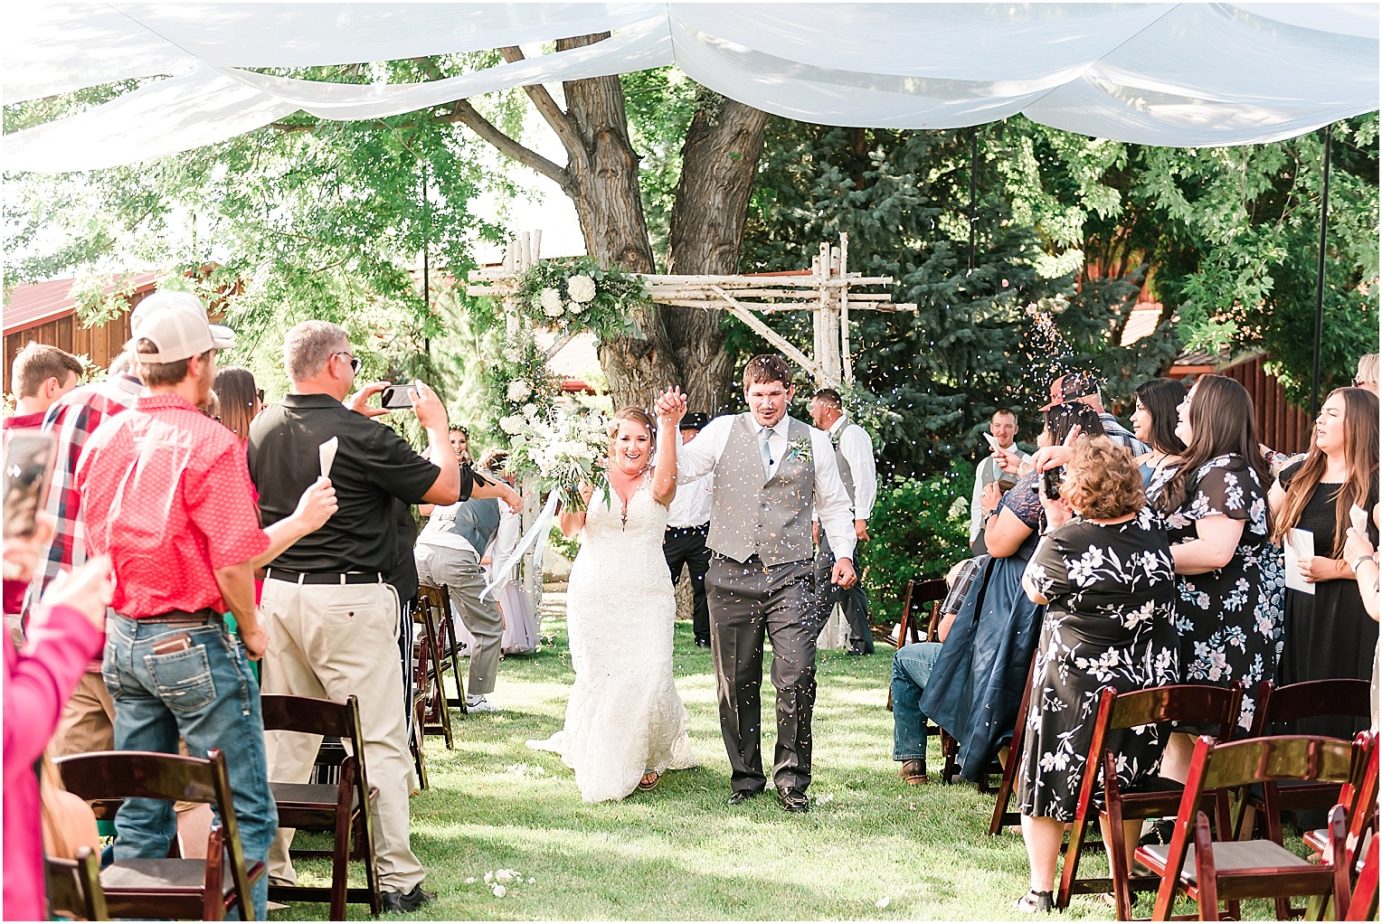 Sugar Pine Barn Wedding Ceremony throwing confetti